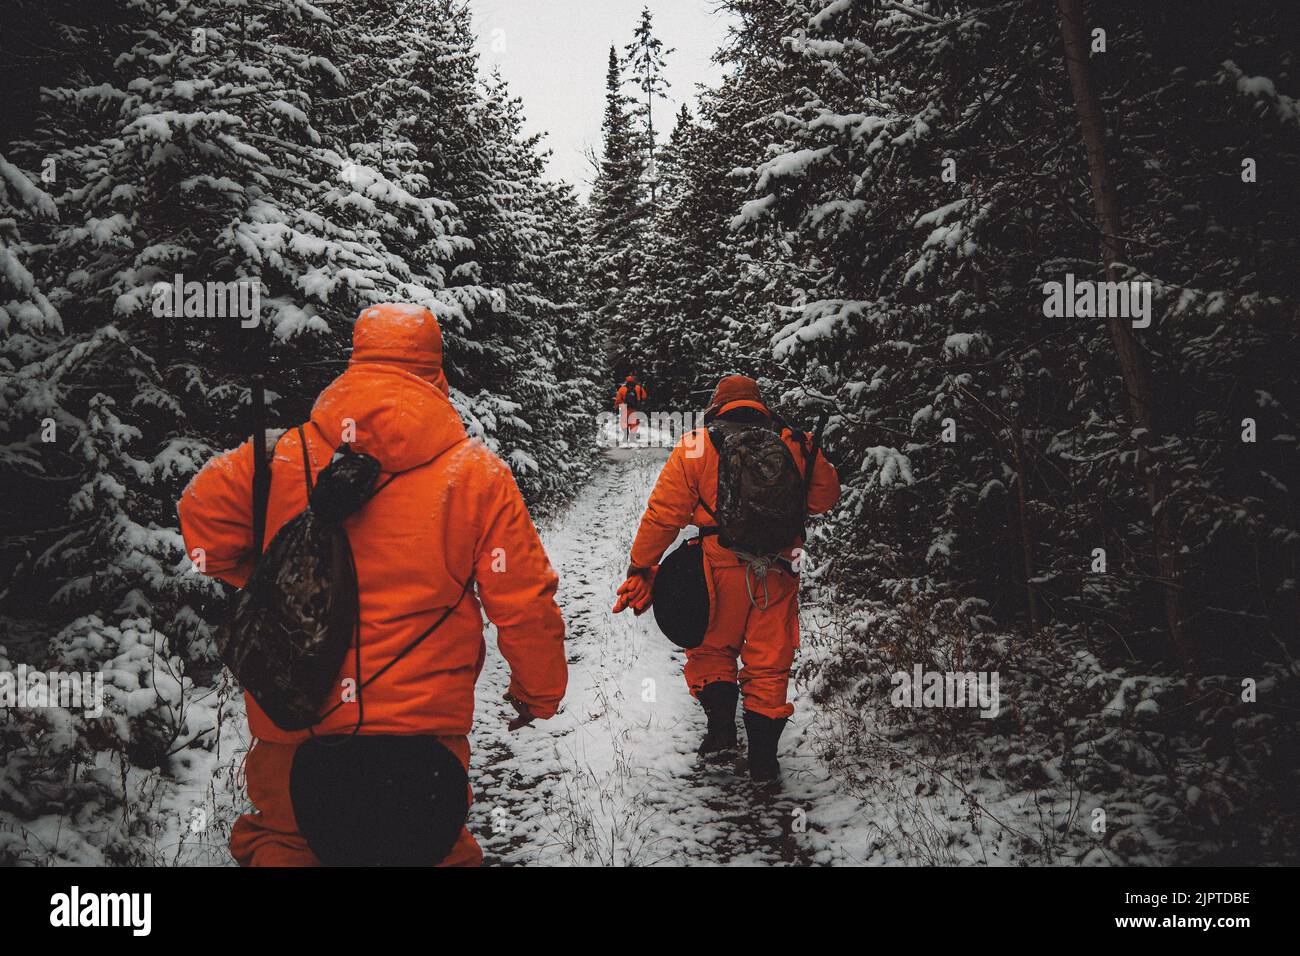 Un gros plan de chasseurs en costume d'orange se dirigeant dans la forêt de pins enneigée dense Banque D'Images